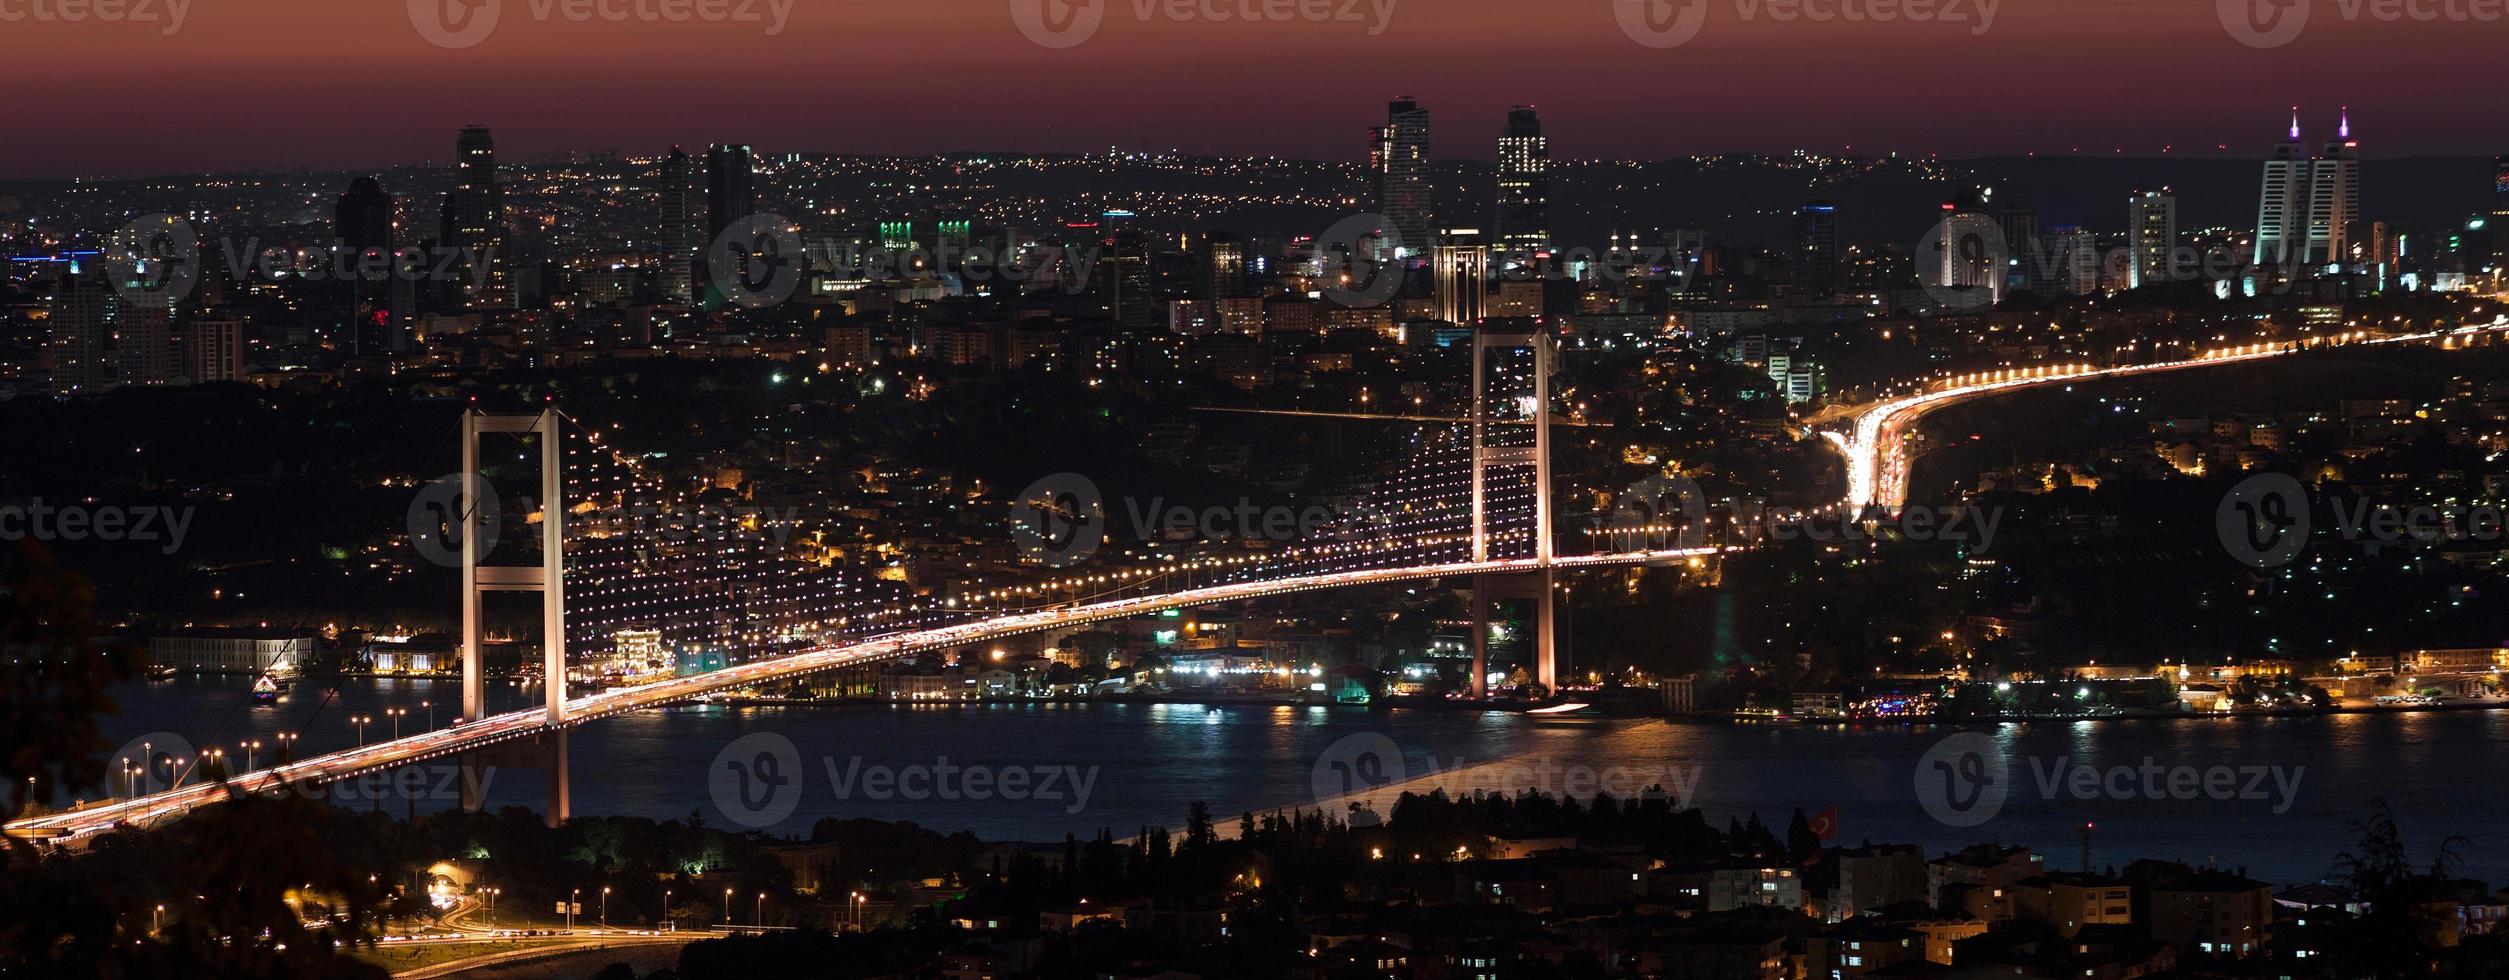 Bosporus-brug bij nacht foto